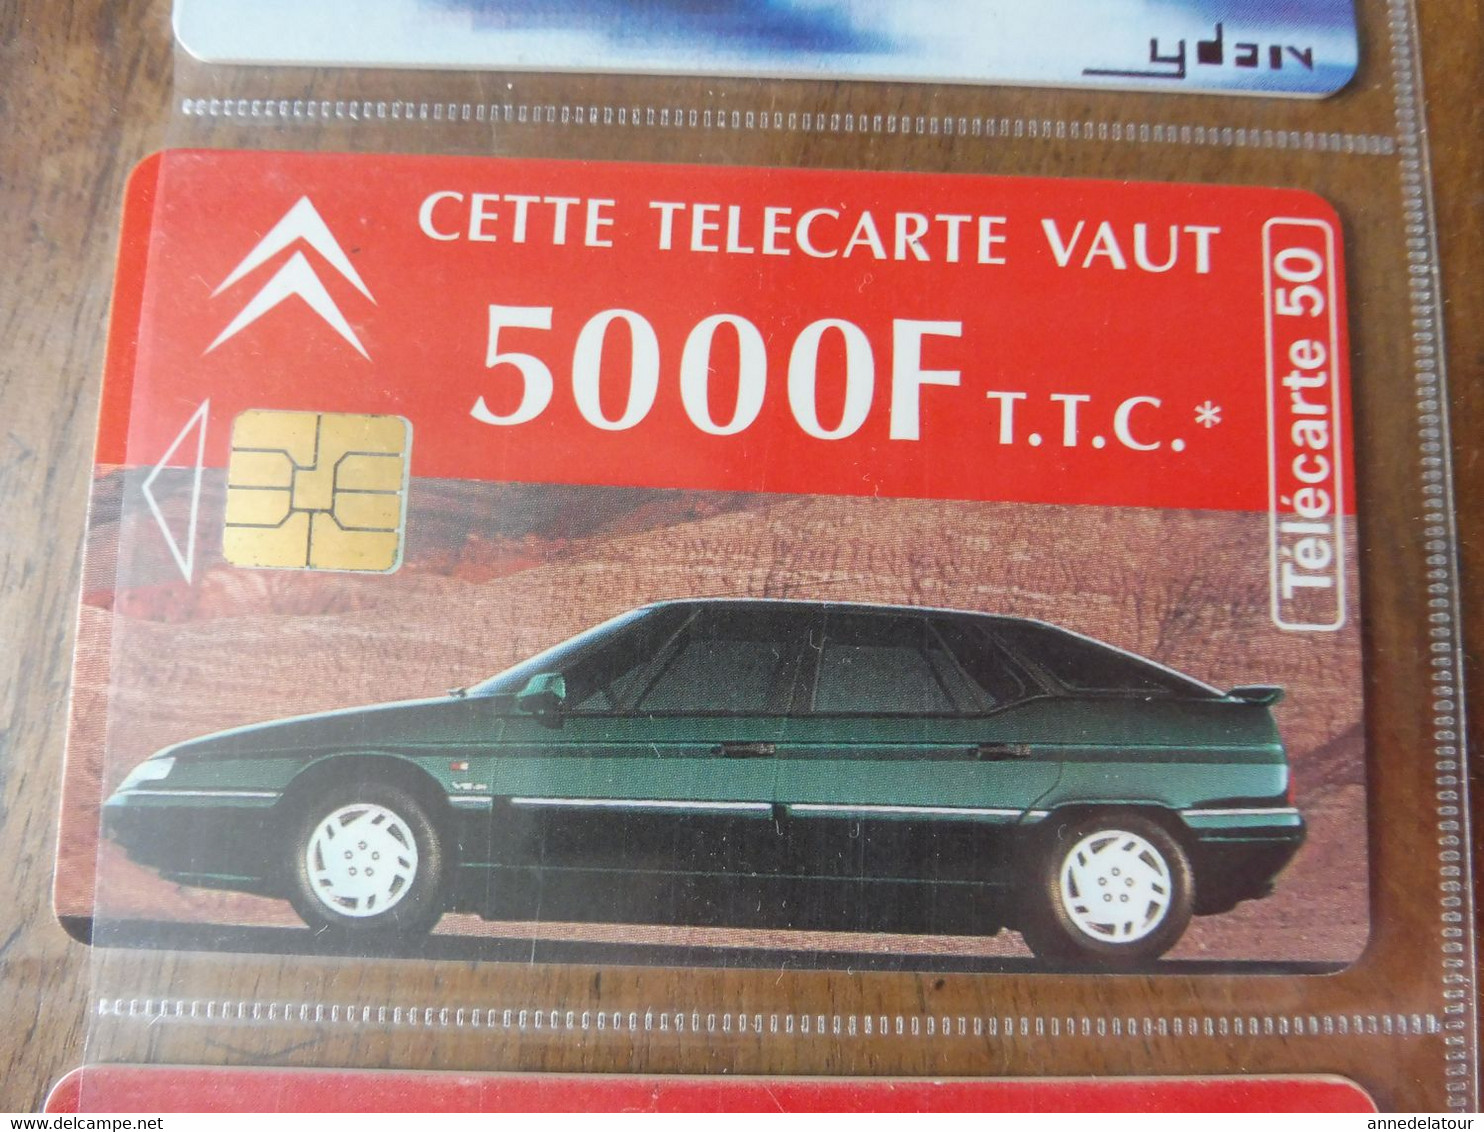 10 télécartes (lié à l'automobile) FRANCE TELECOM  ->  Peugeot - Assistance, DAEWOO NUBIRA, Citroën, LAGUNA, MATRA, etc